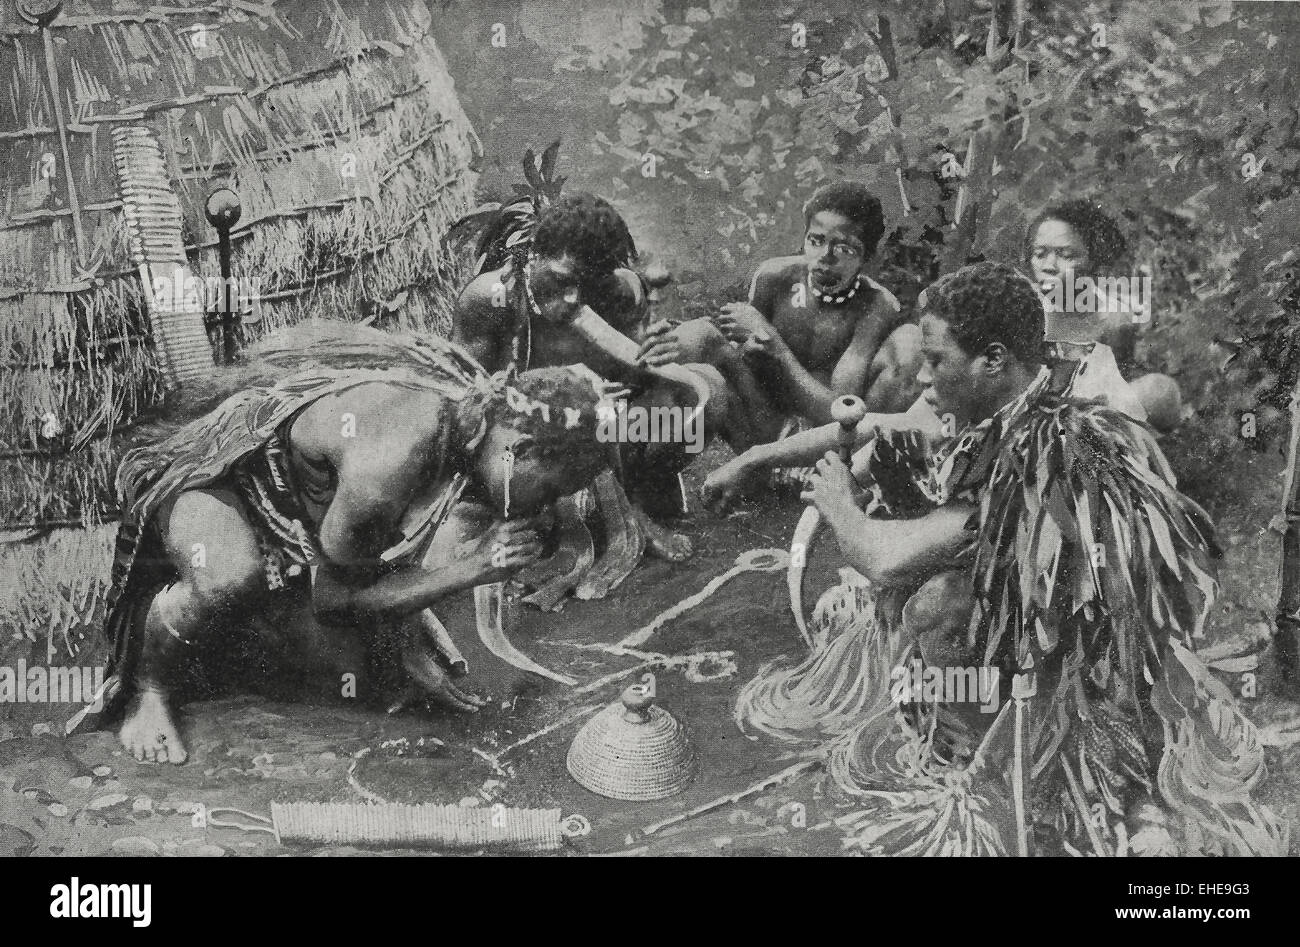 Dagga fumatori - Questo gruppo di nativi è fumare canapa indiana che è sepolto nella terra. Lo strumento utilizzato è costituito da un cavo o reed, in questo esempio le corna di bovini. Si tratta di una perniciosa abitudine, come il fumo produce torpore e talvolta delirio. Circa 1895 Foto Stock